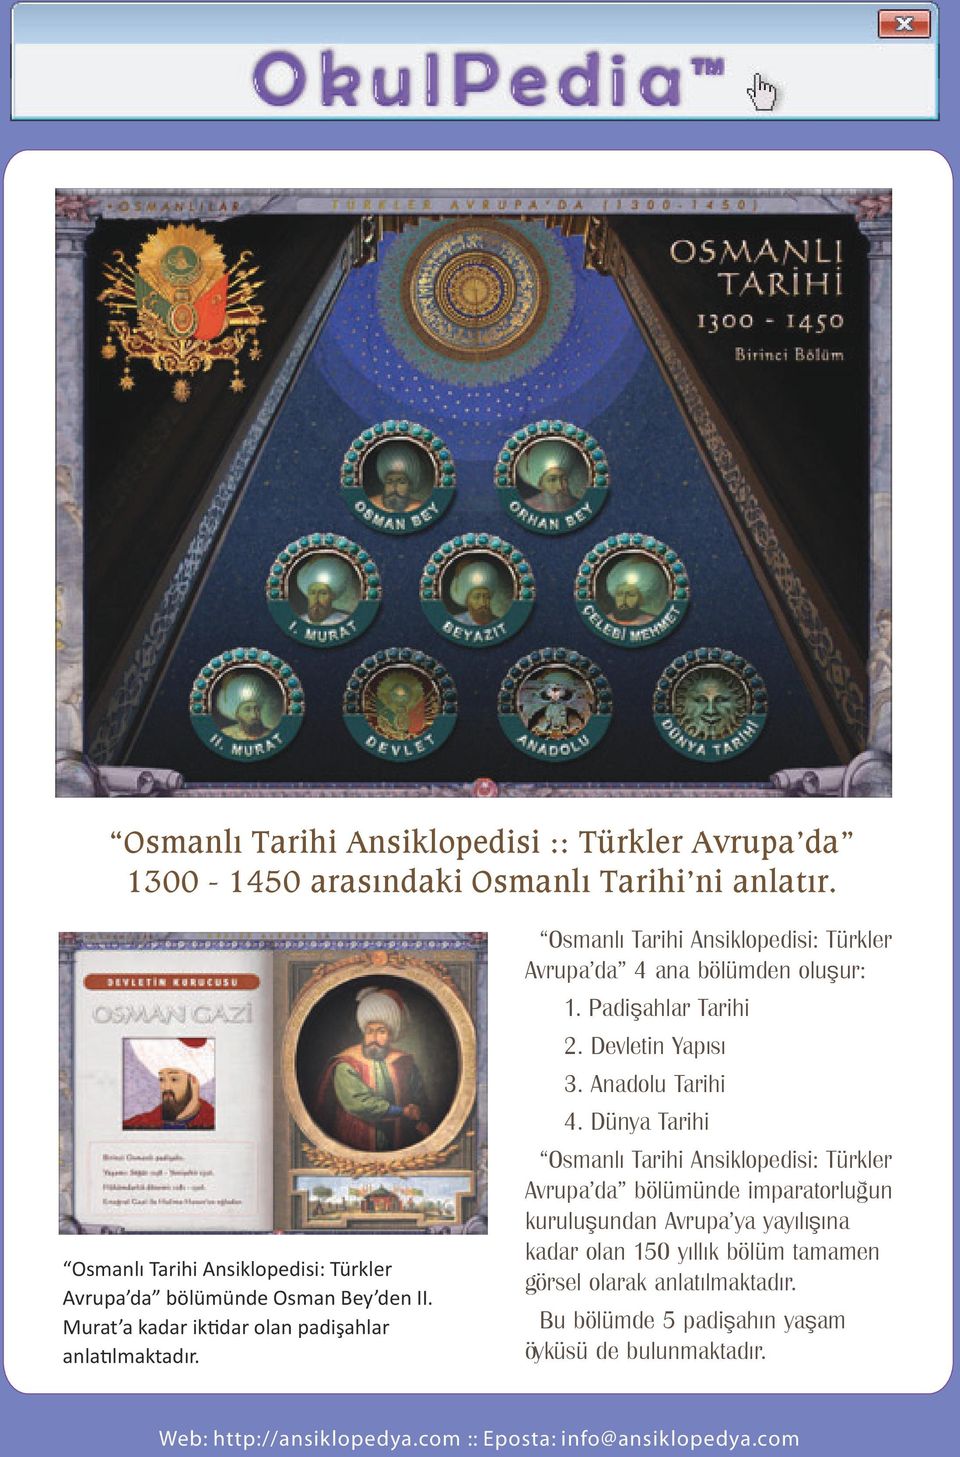 Osmanlı Tarihi Ansiklopedisi: Türkler Avrupa da 4 ana bölümden oluşur: 1. Padişahlar Tarihi 2. Devletin Yapısı 3. Anadolu Tarihi 4.